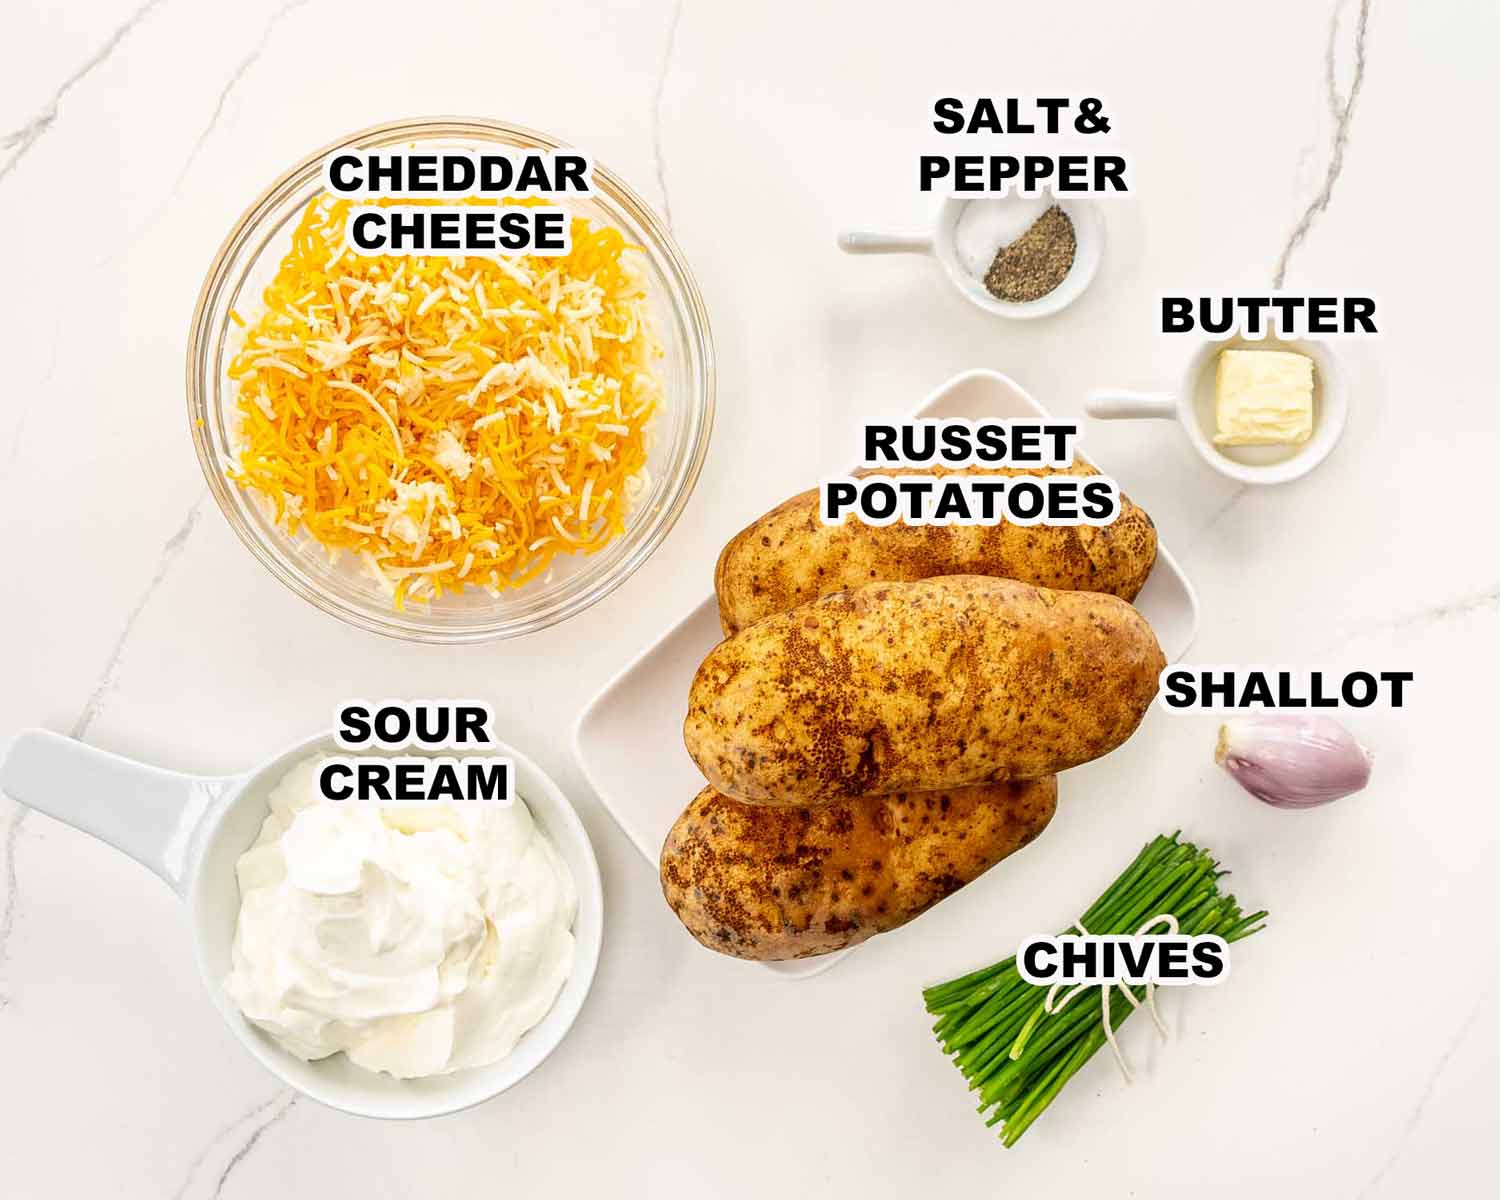 ingredients needed to make potatoes romanoff.